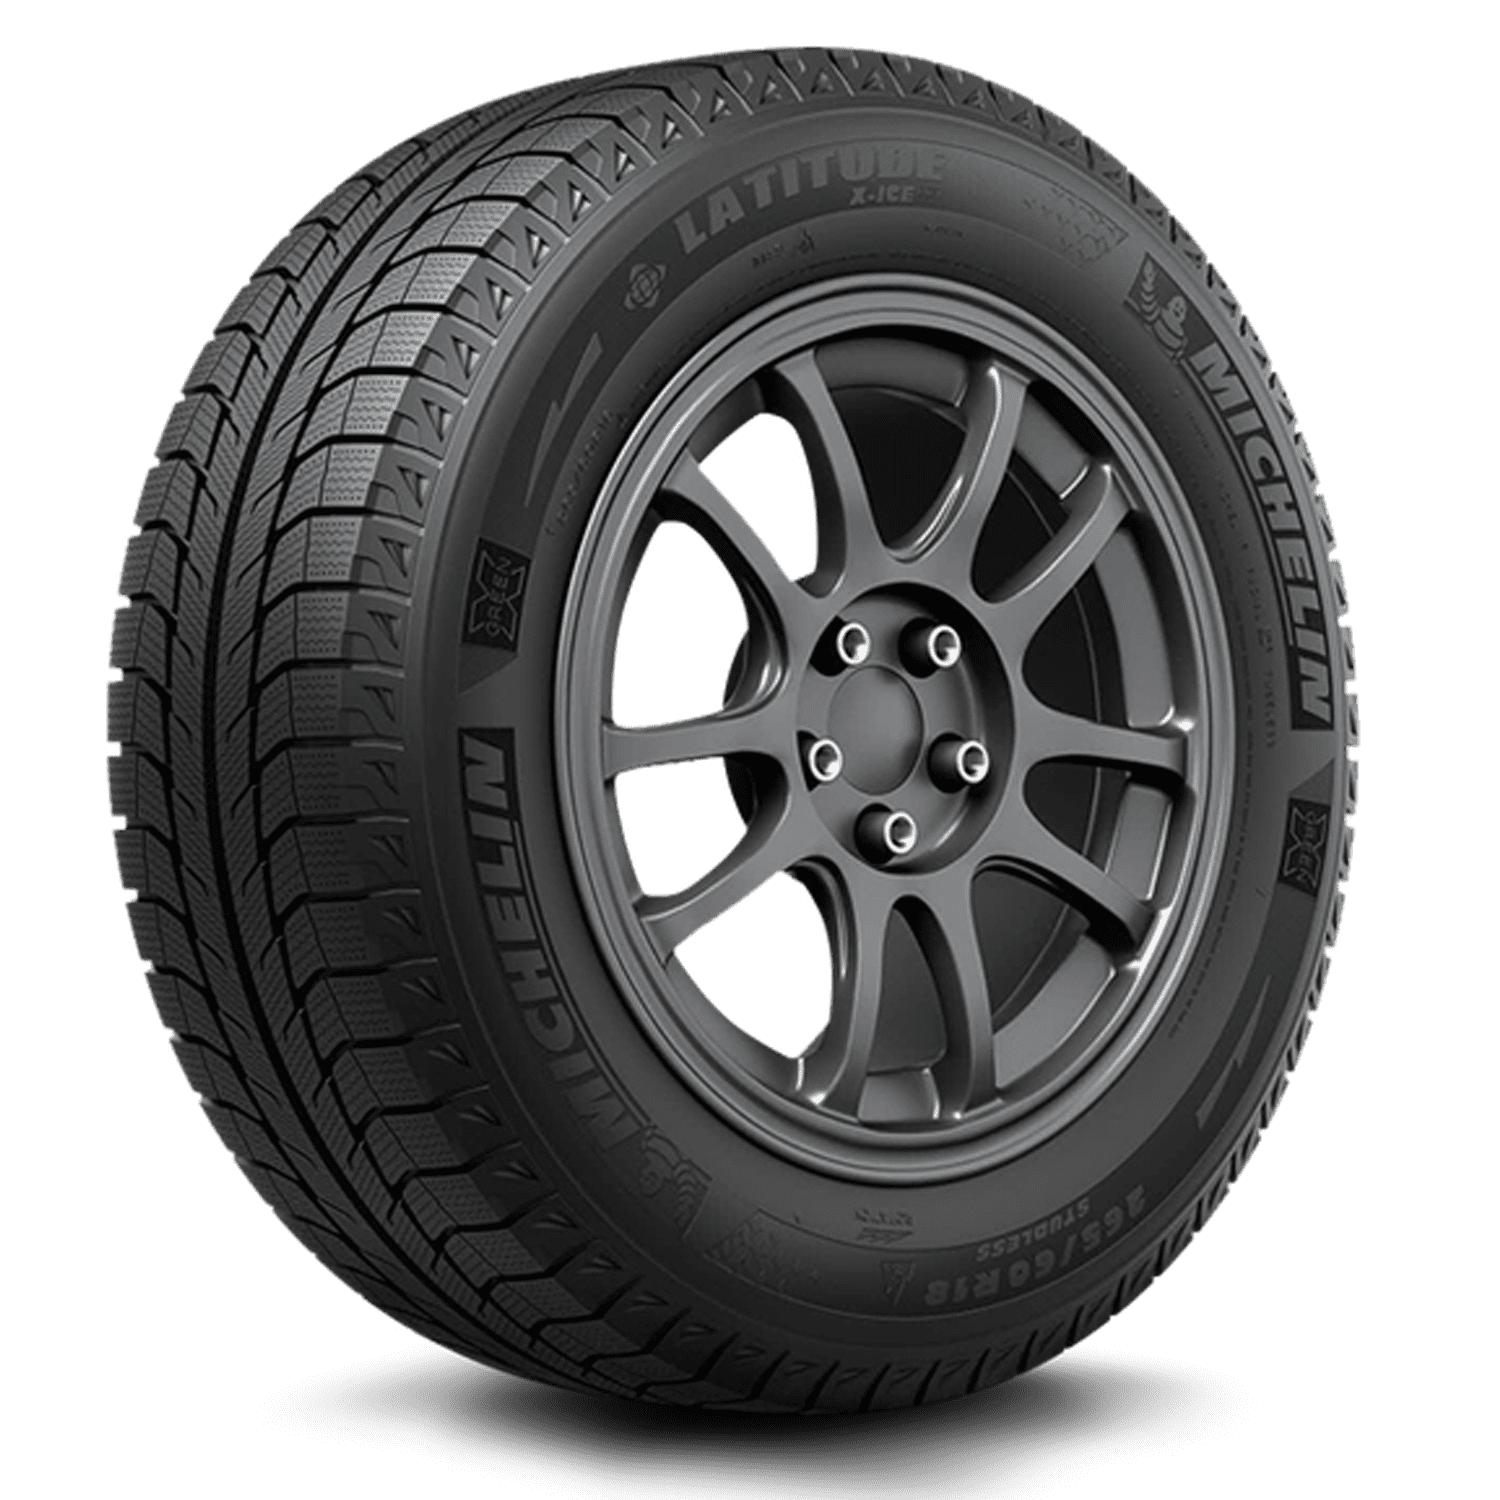 Michelin Latitude X-Ice Xi2 235/65R18 106 T Tire.